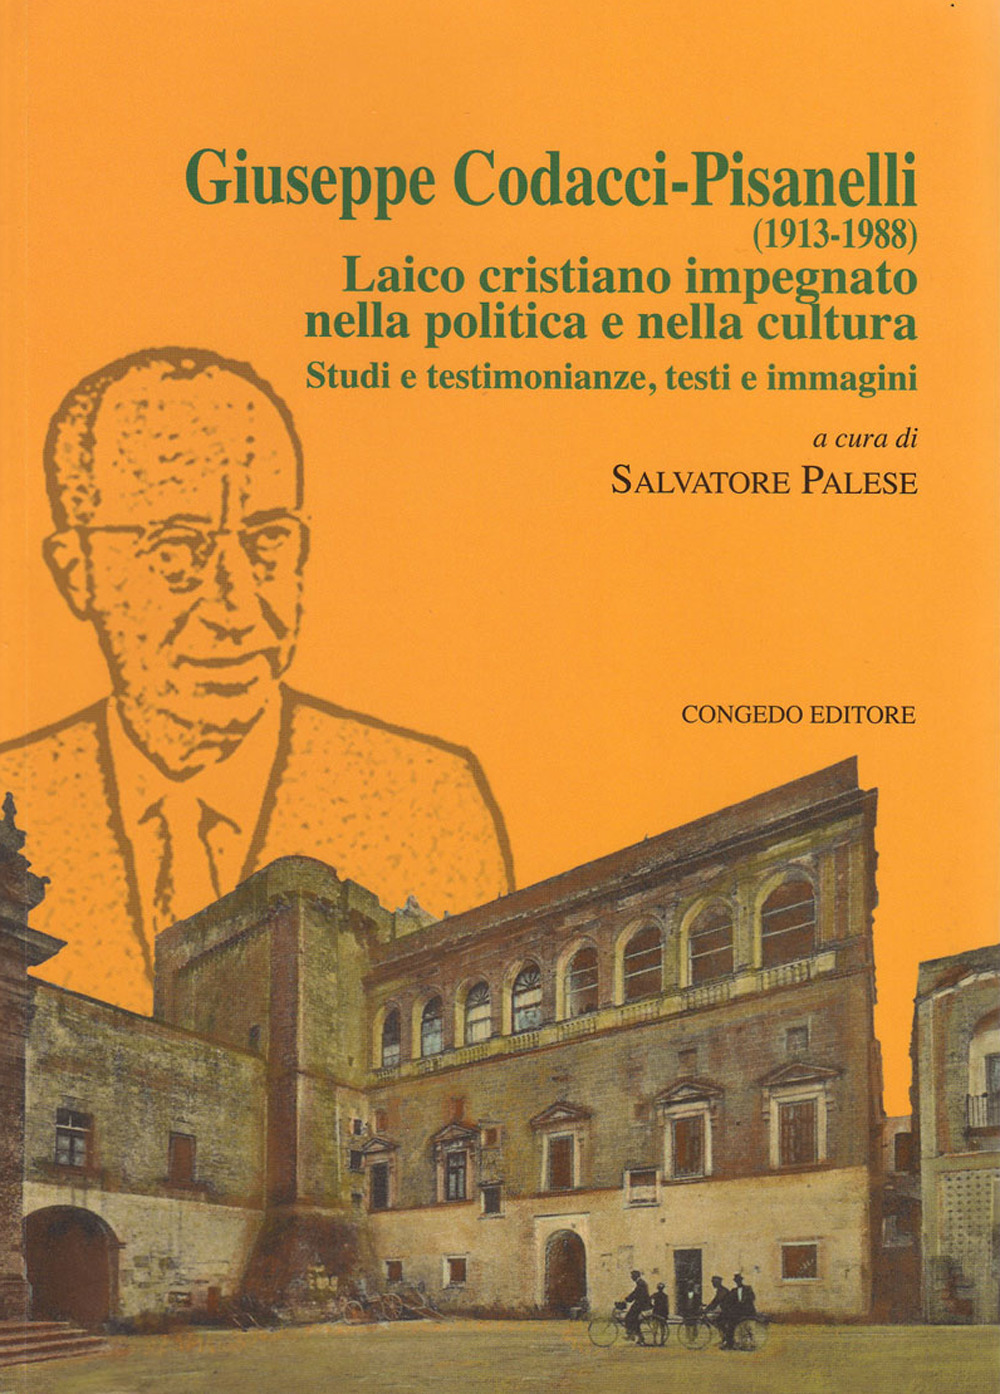 Giuseppe Codacci-Pisanelli (1913-1988). Laico cristiano impegnato nella politica e nella cultura. Studi e testimonianze, testi e immagini